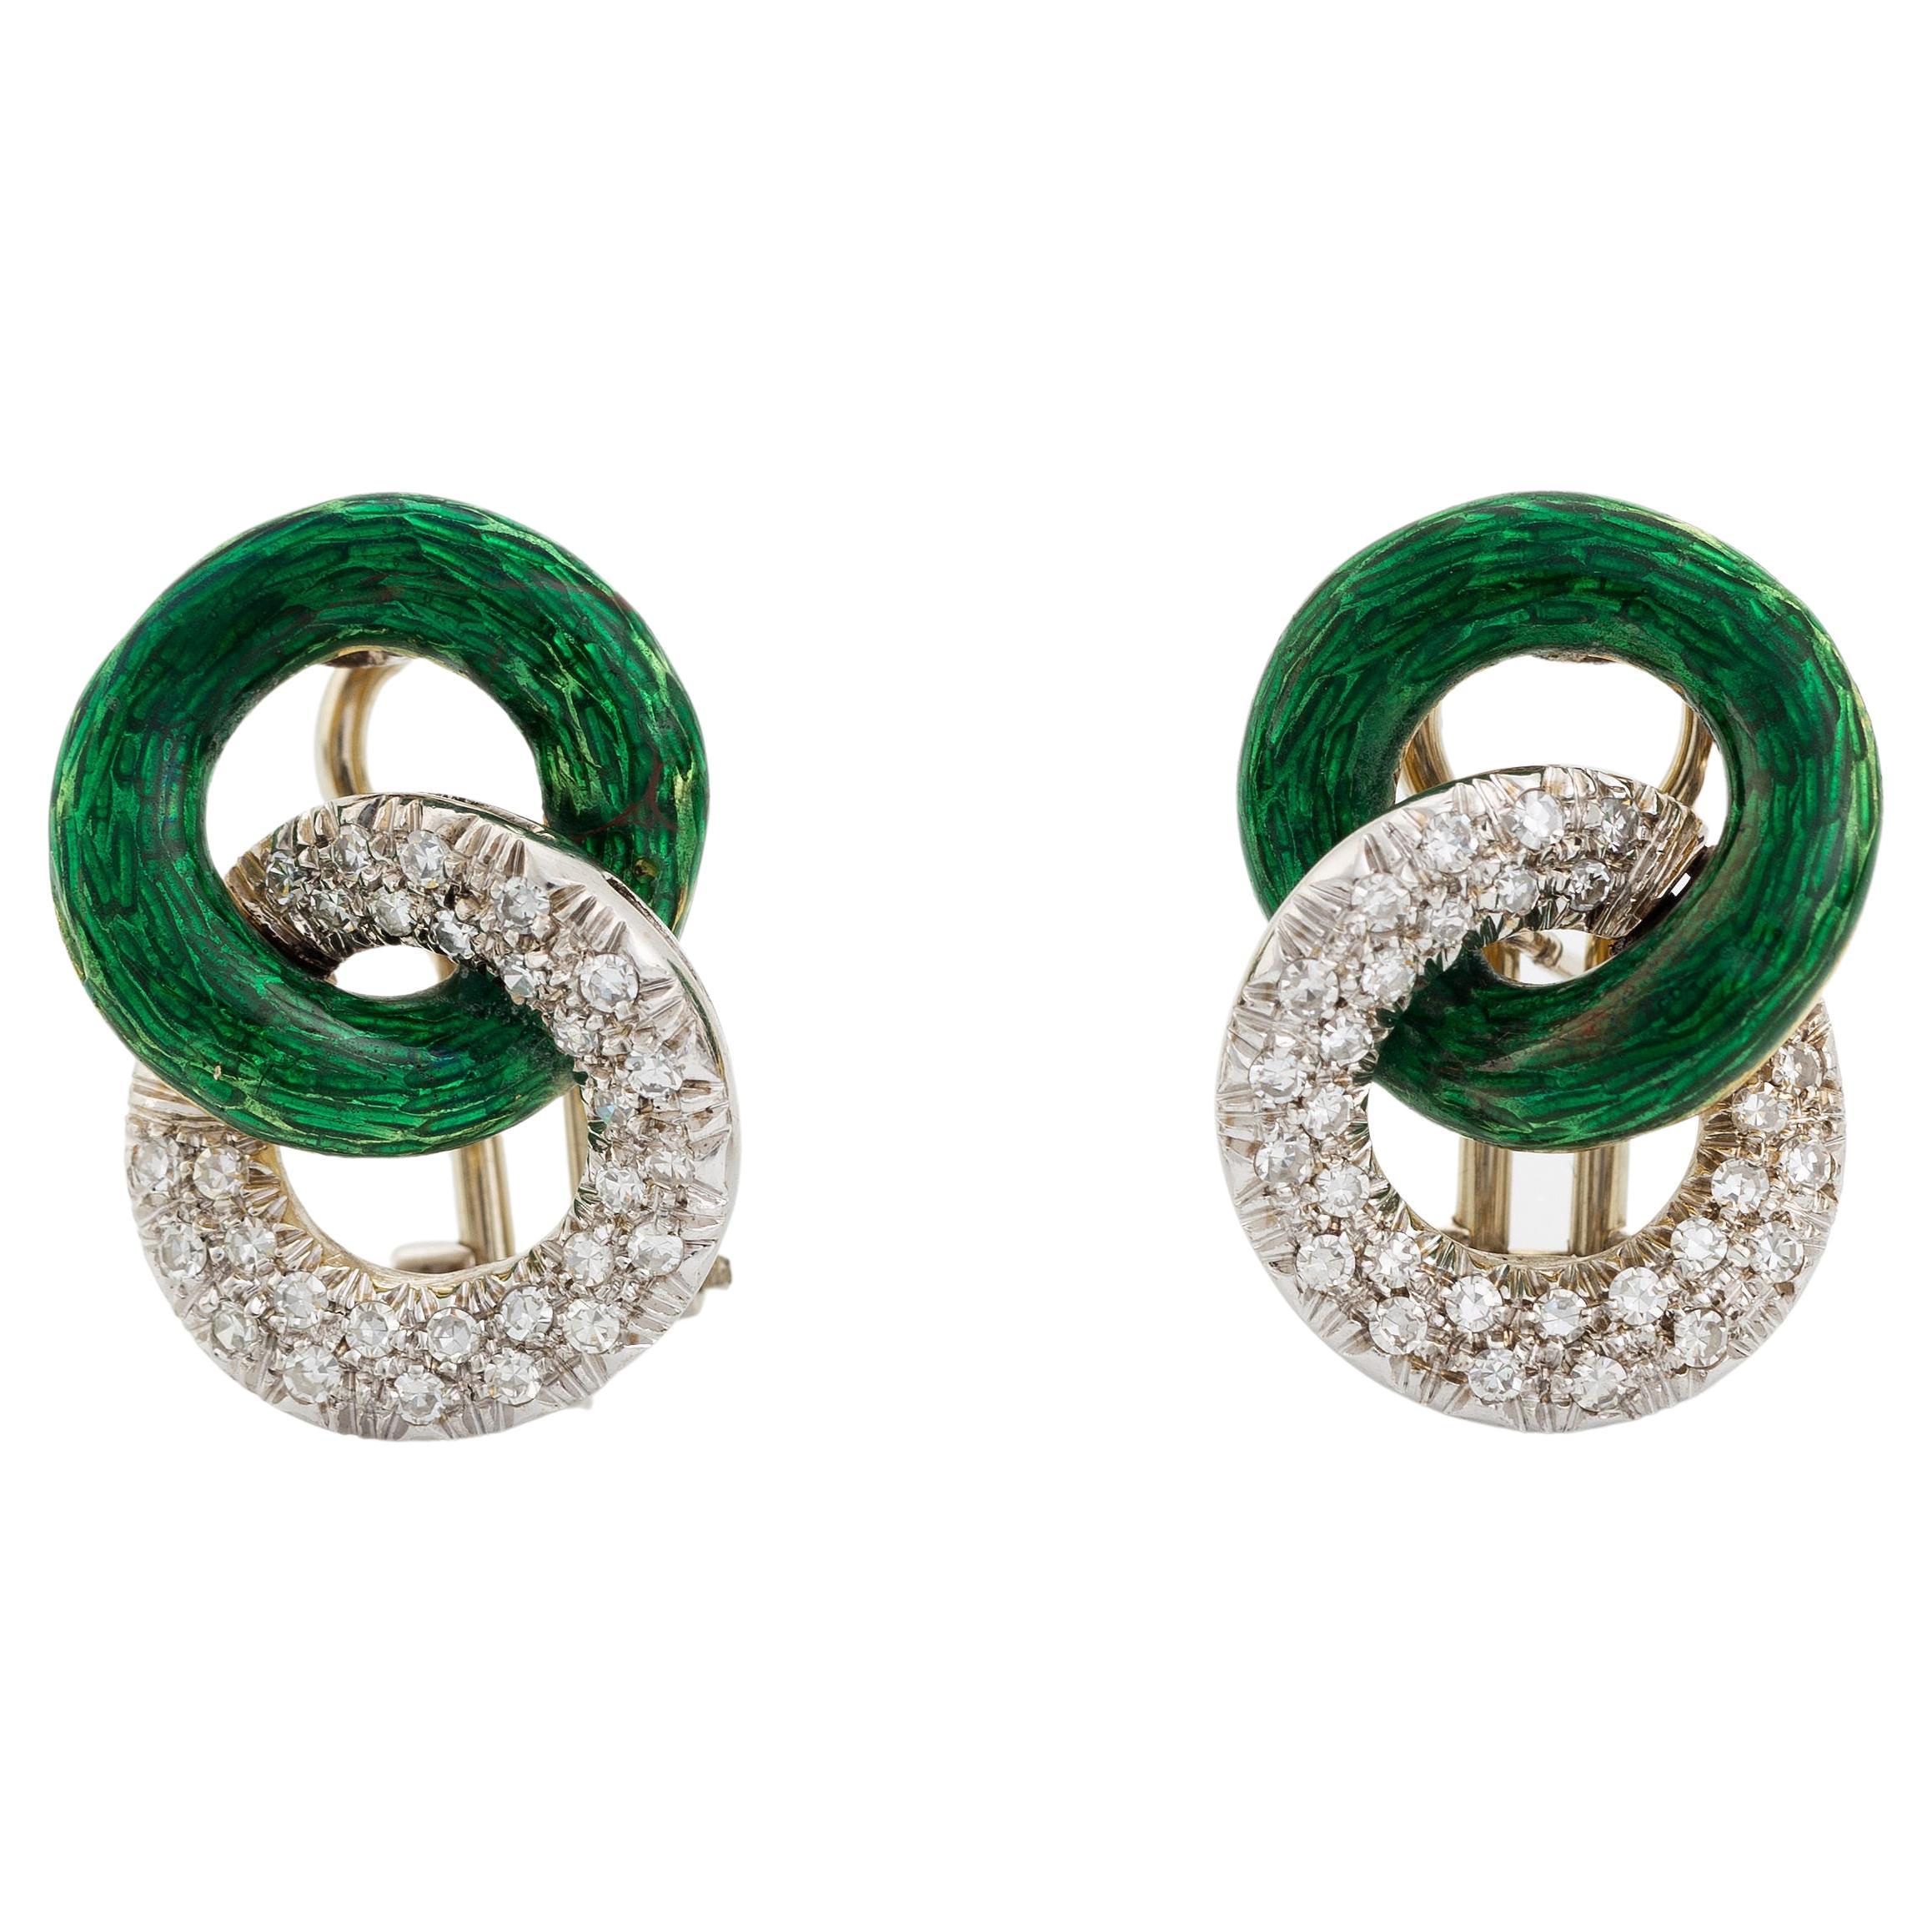 1950s Italian diamond and enamel earrings